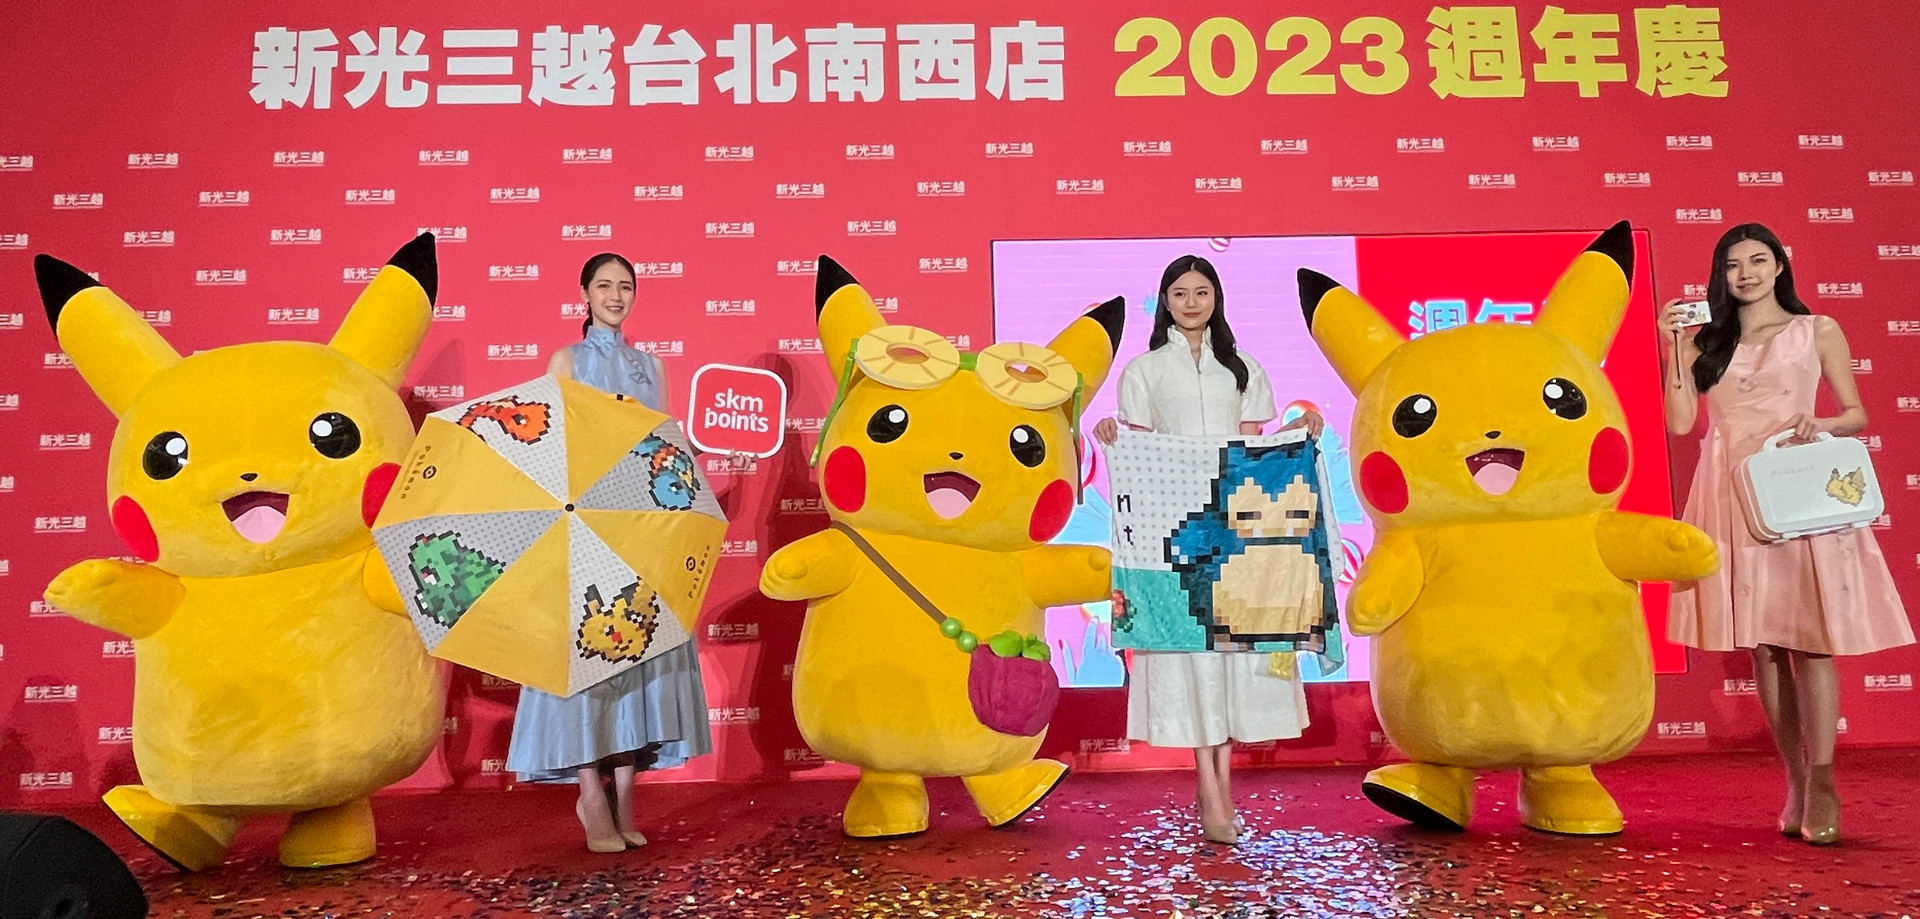 Pokémon Center TAIPEI 台北寶可夢中心 新光三越 2023 週年慶